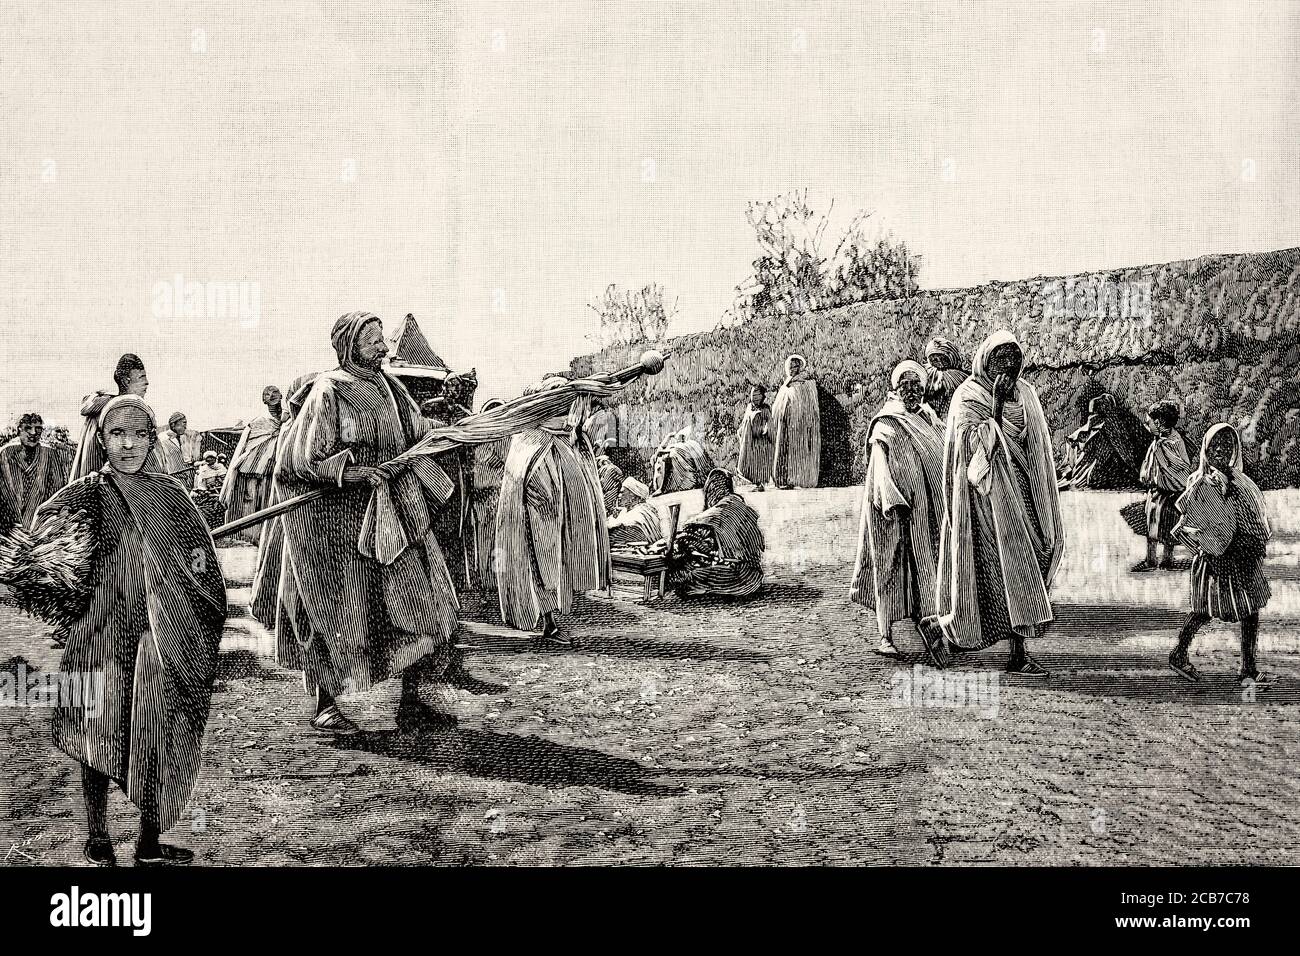 Les confréries religieuses musulmanes collectent des dons dans les rues, au Maroc. Illustration gravée de la Ilustracion Española y Americana datant du XIXe siècle 1894 Banque D'Images